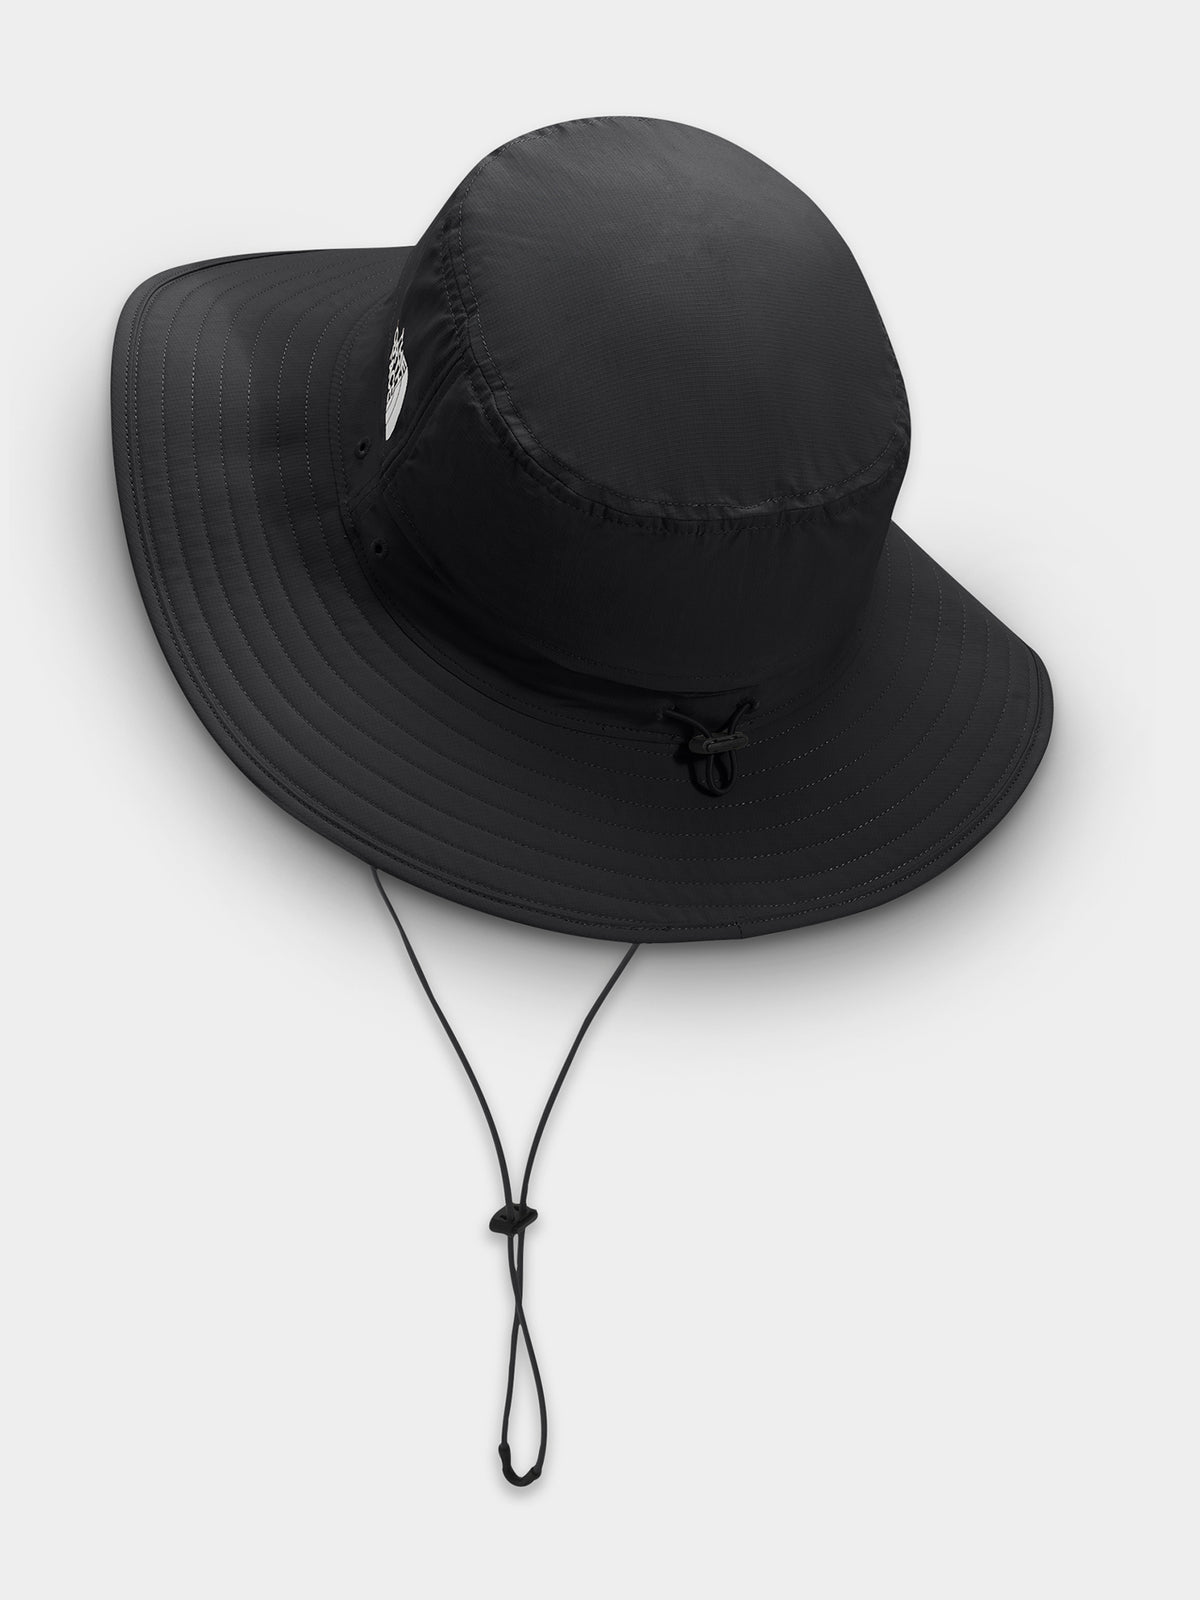 Horizon Breeze Brimmer Hat in Black